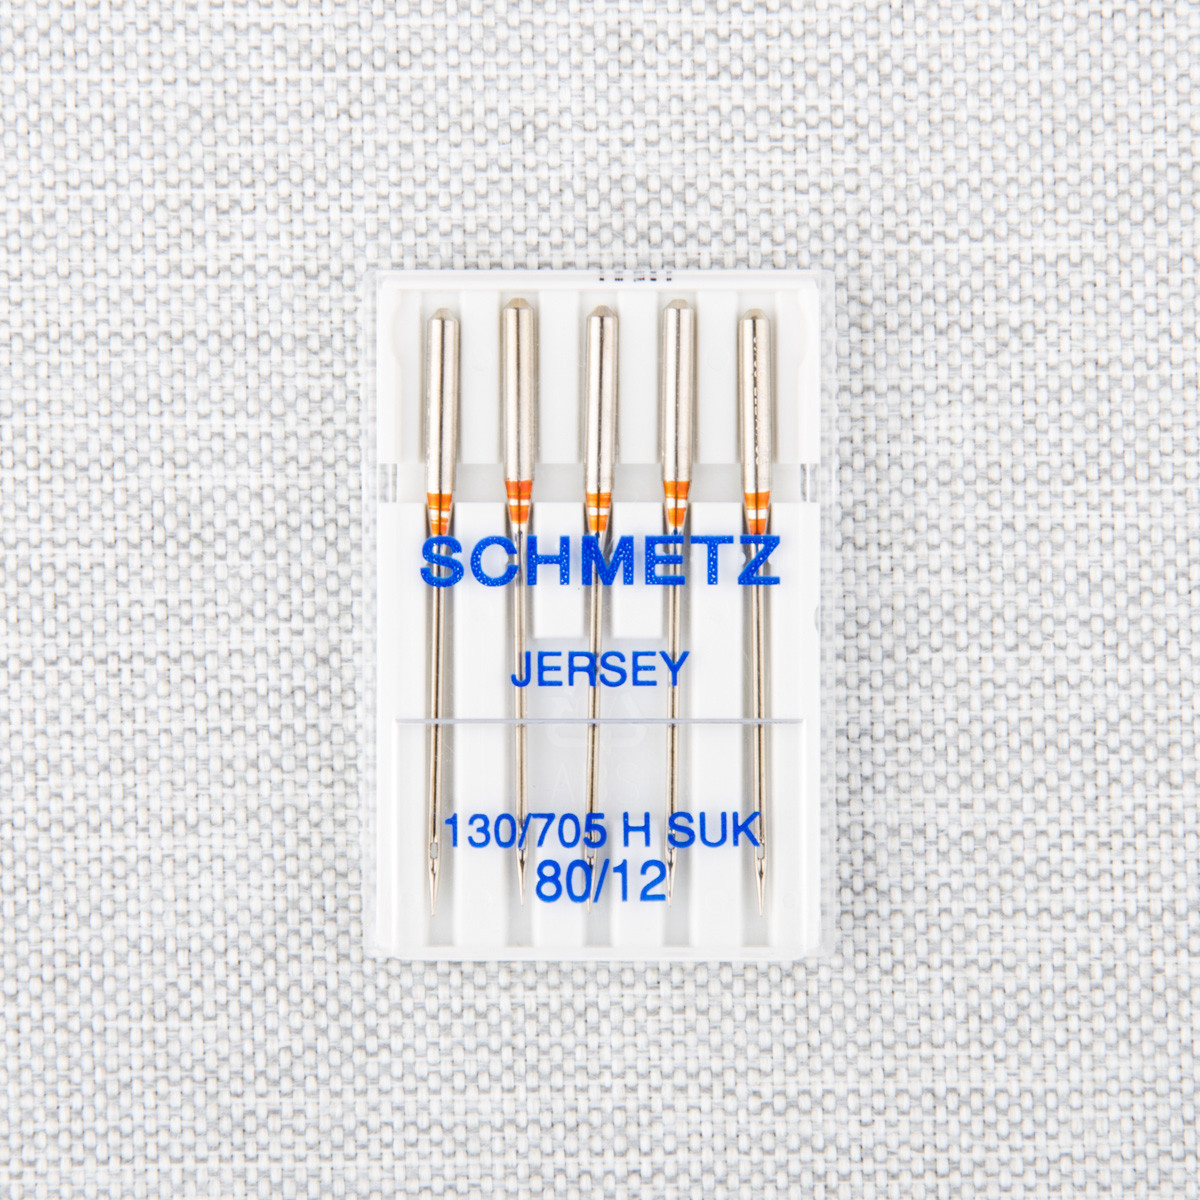 Schmetz Schmetz #1714 Jersey ball point needles  - 80/12 - 5 count